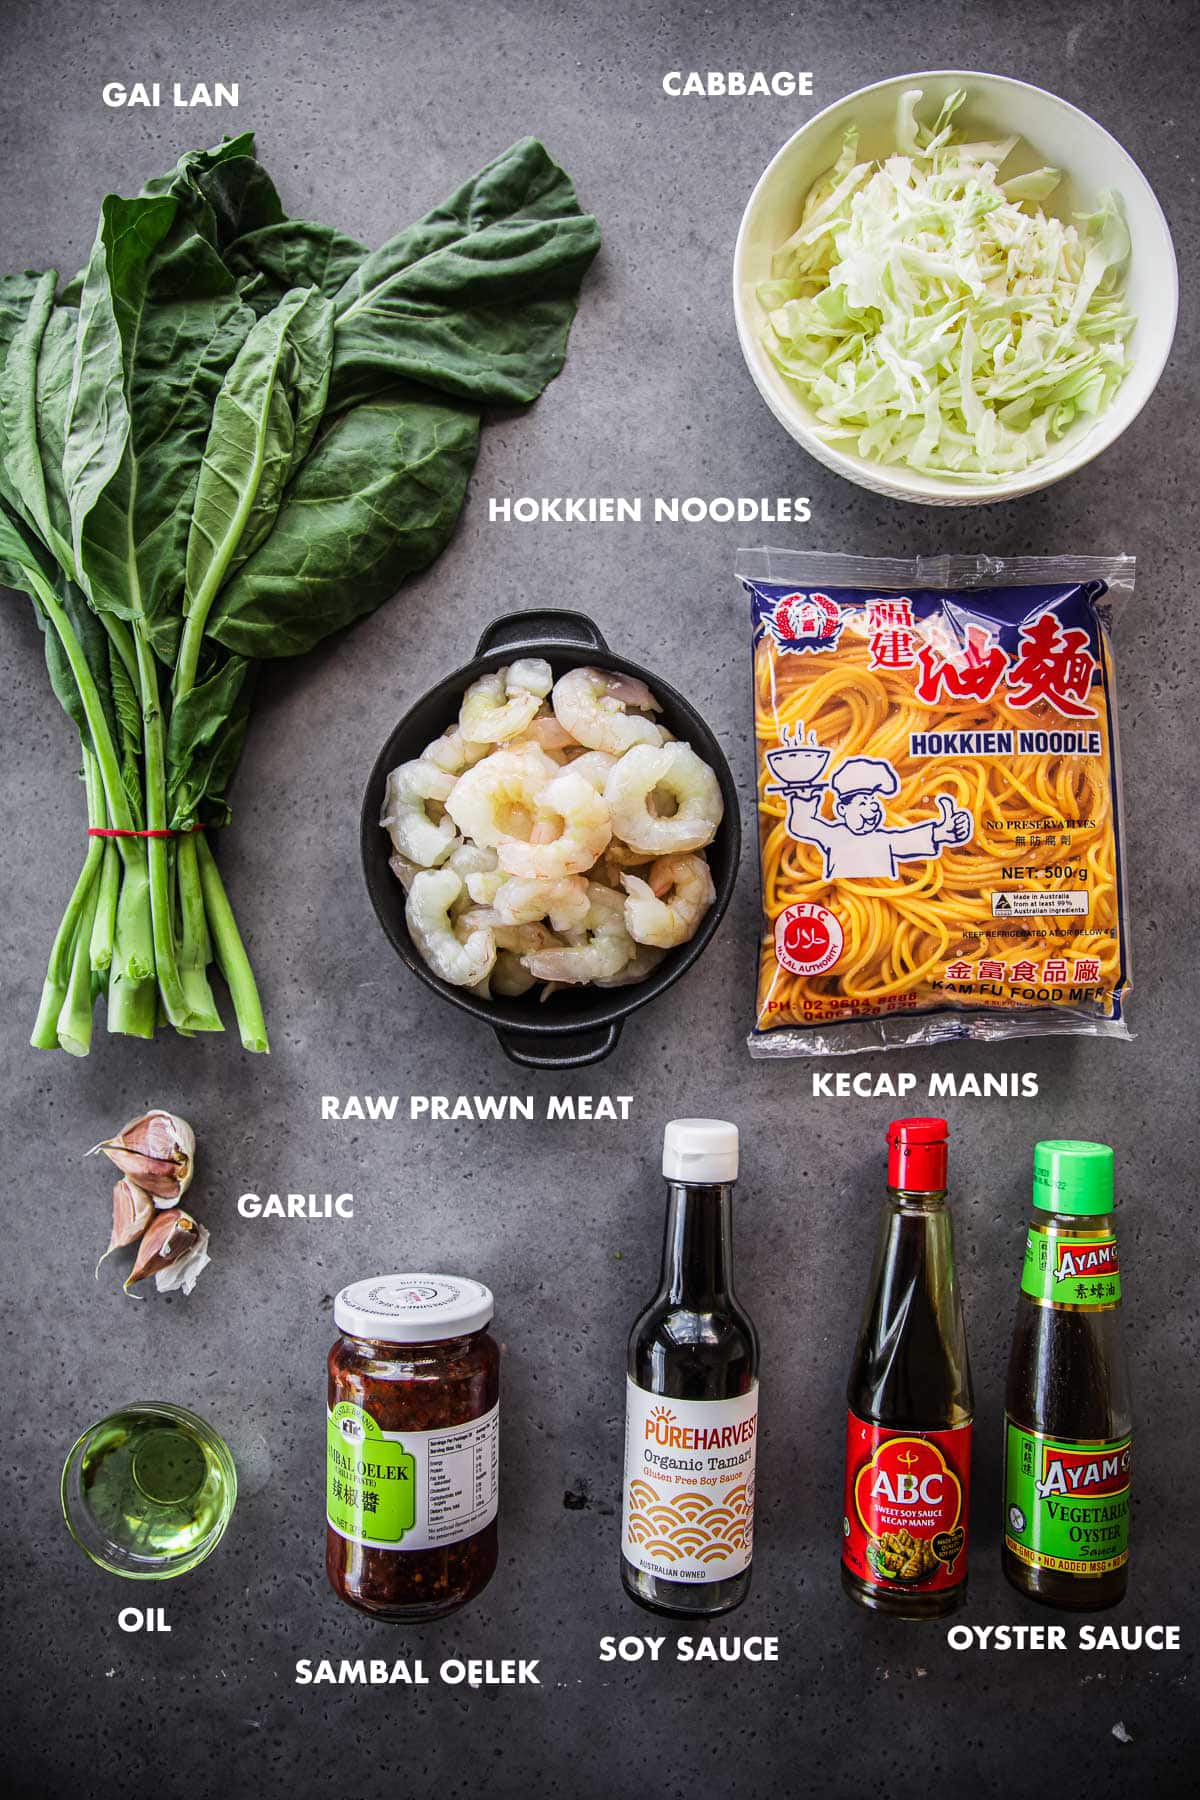 Prawn Hokkien Noodle Ingredients labeled - gai lan, cabbage, raw peeled prawns, hokkien noodles, garlic, oil, sambal oelek, kecap manis, oyster sauce and soy sauce.